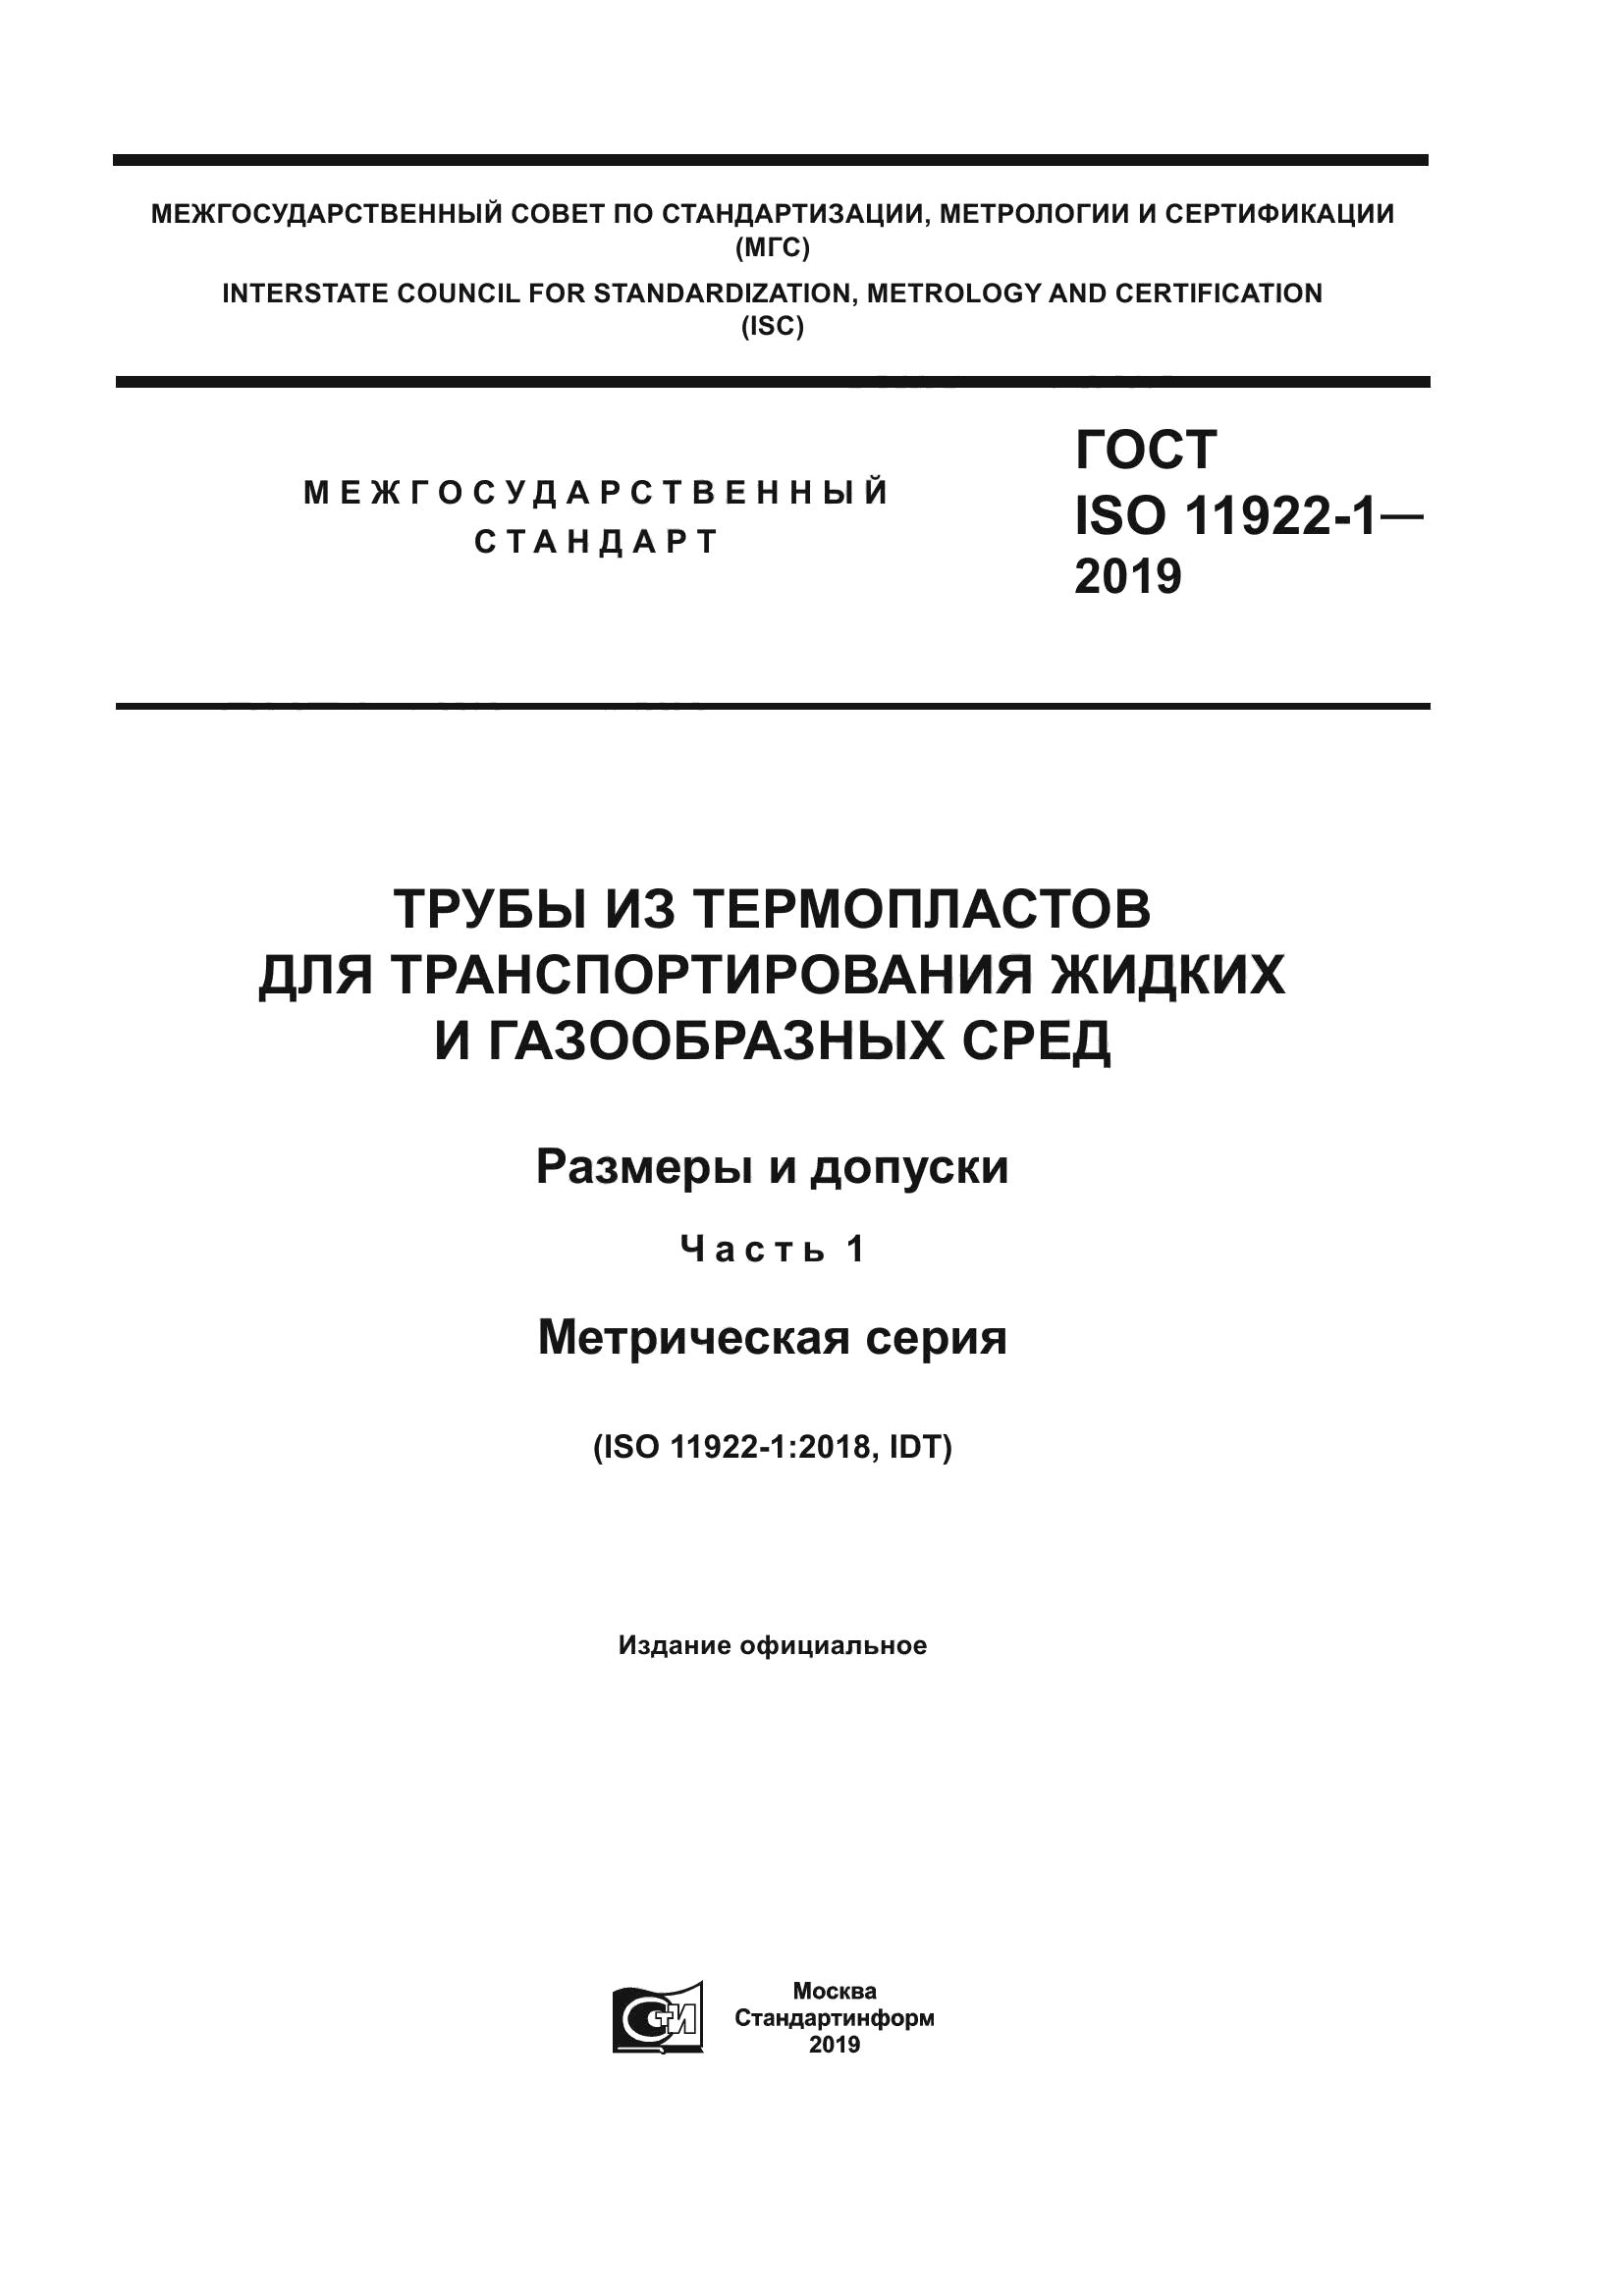 ГОСТ ISO 11922-1-2019